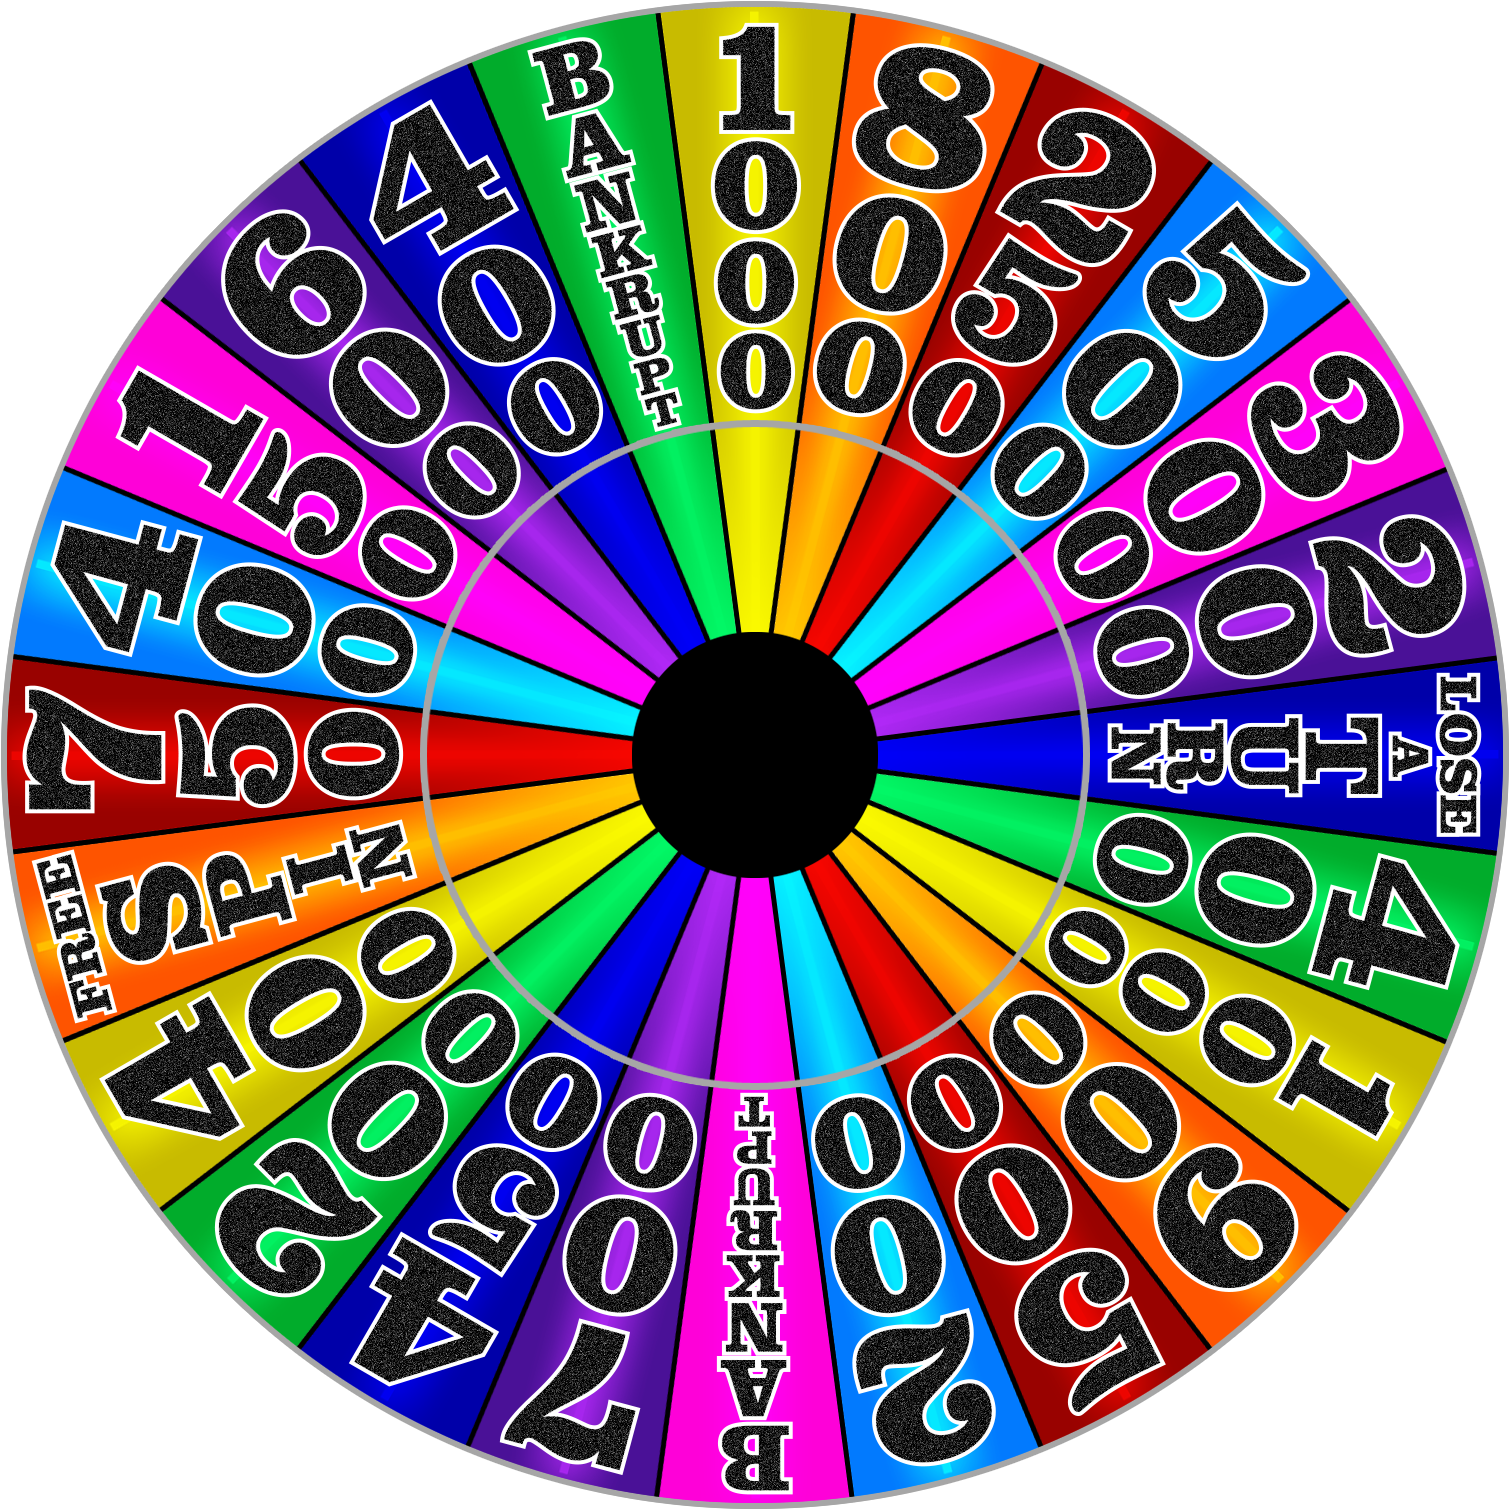 UK Wheel of Fortune - 1998 - Round 2 by wheelgenius